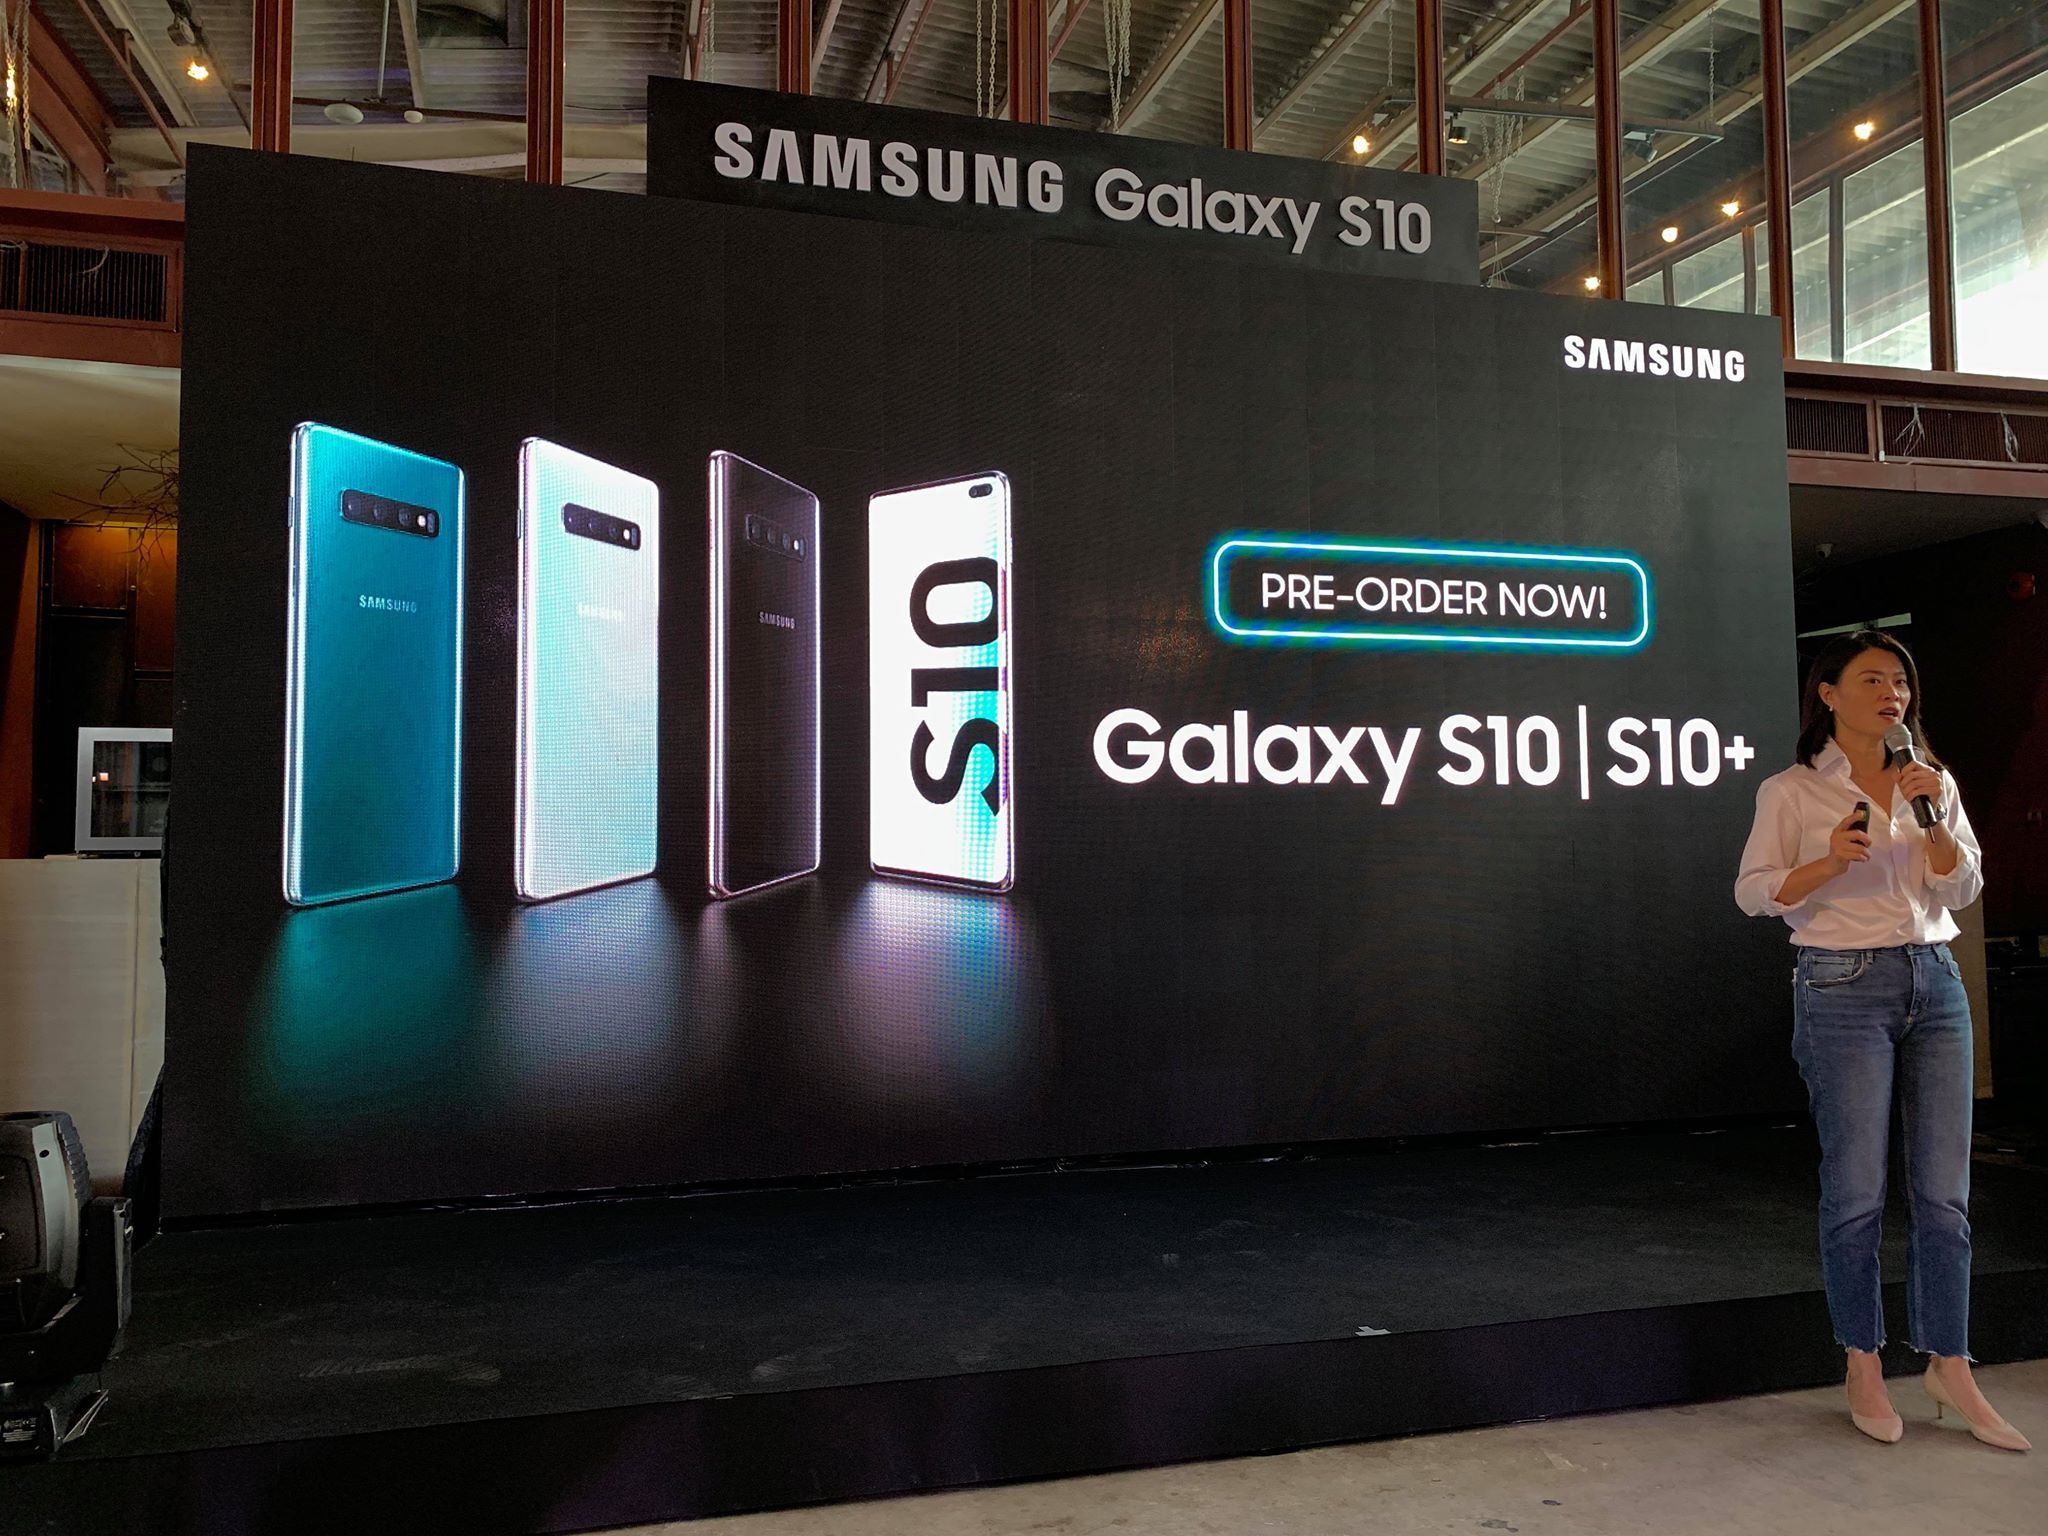 Samsung ประกาศราคา Galaxy S10 ในไทยแล้ว เริ่มต้นที่ 26,900 บาท ตัวท็อปปาไปครึ่งแสน